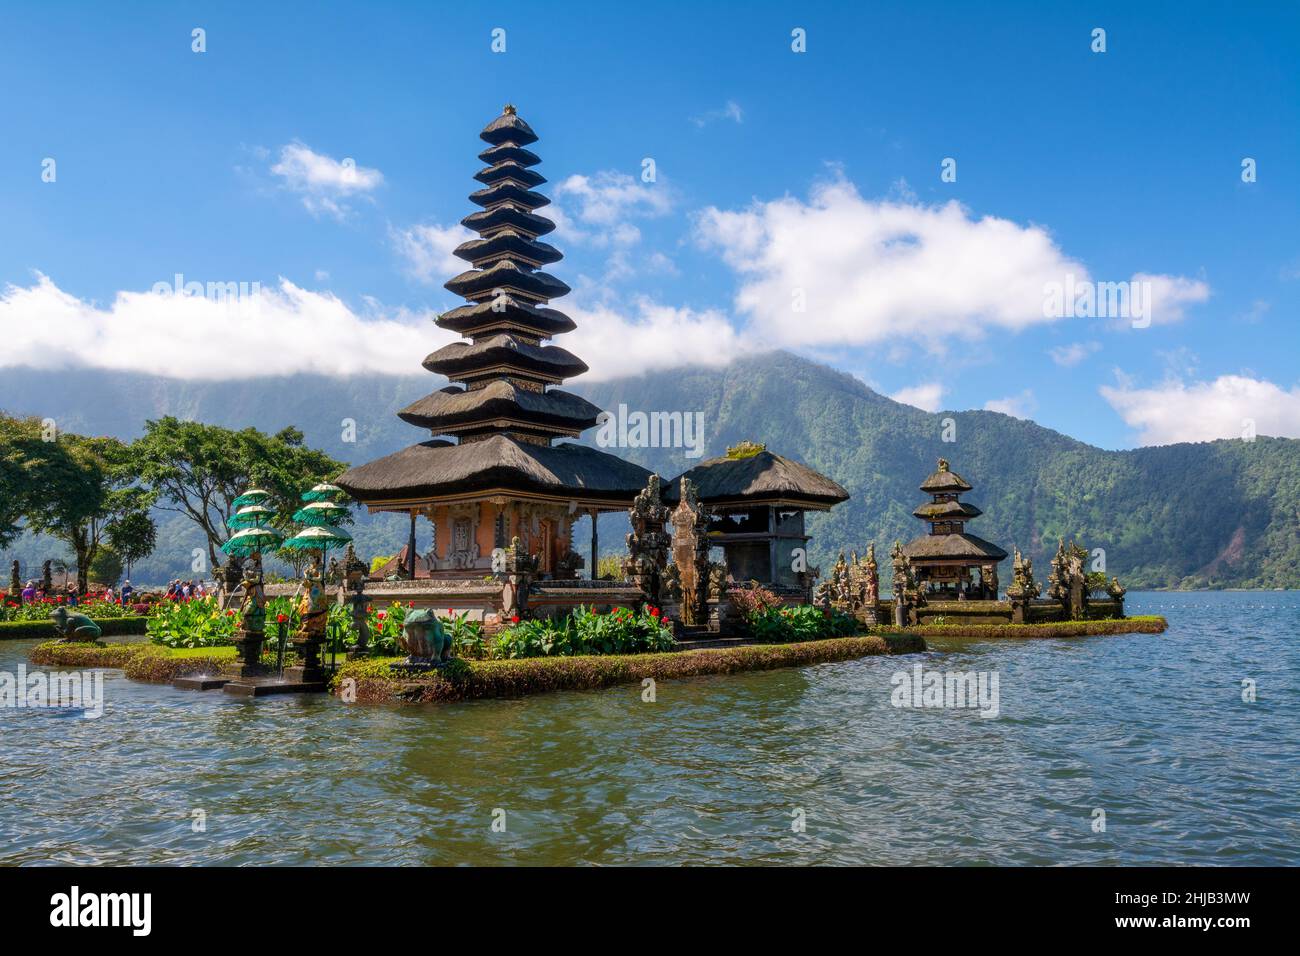 Le temple de l'eau de Bali sur le lac Bratan est le plus beau temple de Bali,  en Indonésie.Le temple de Pura Ulun Danu Beratan est situé au bord du lac  Photo